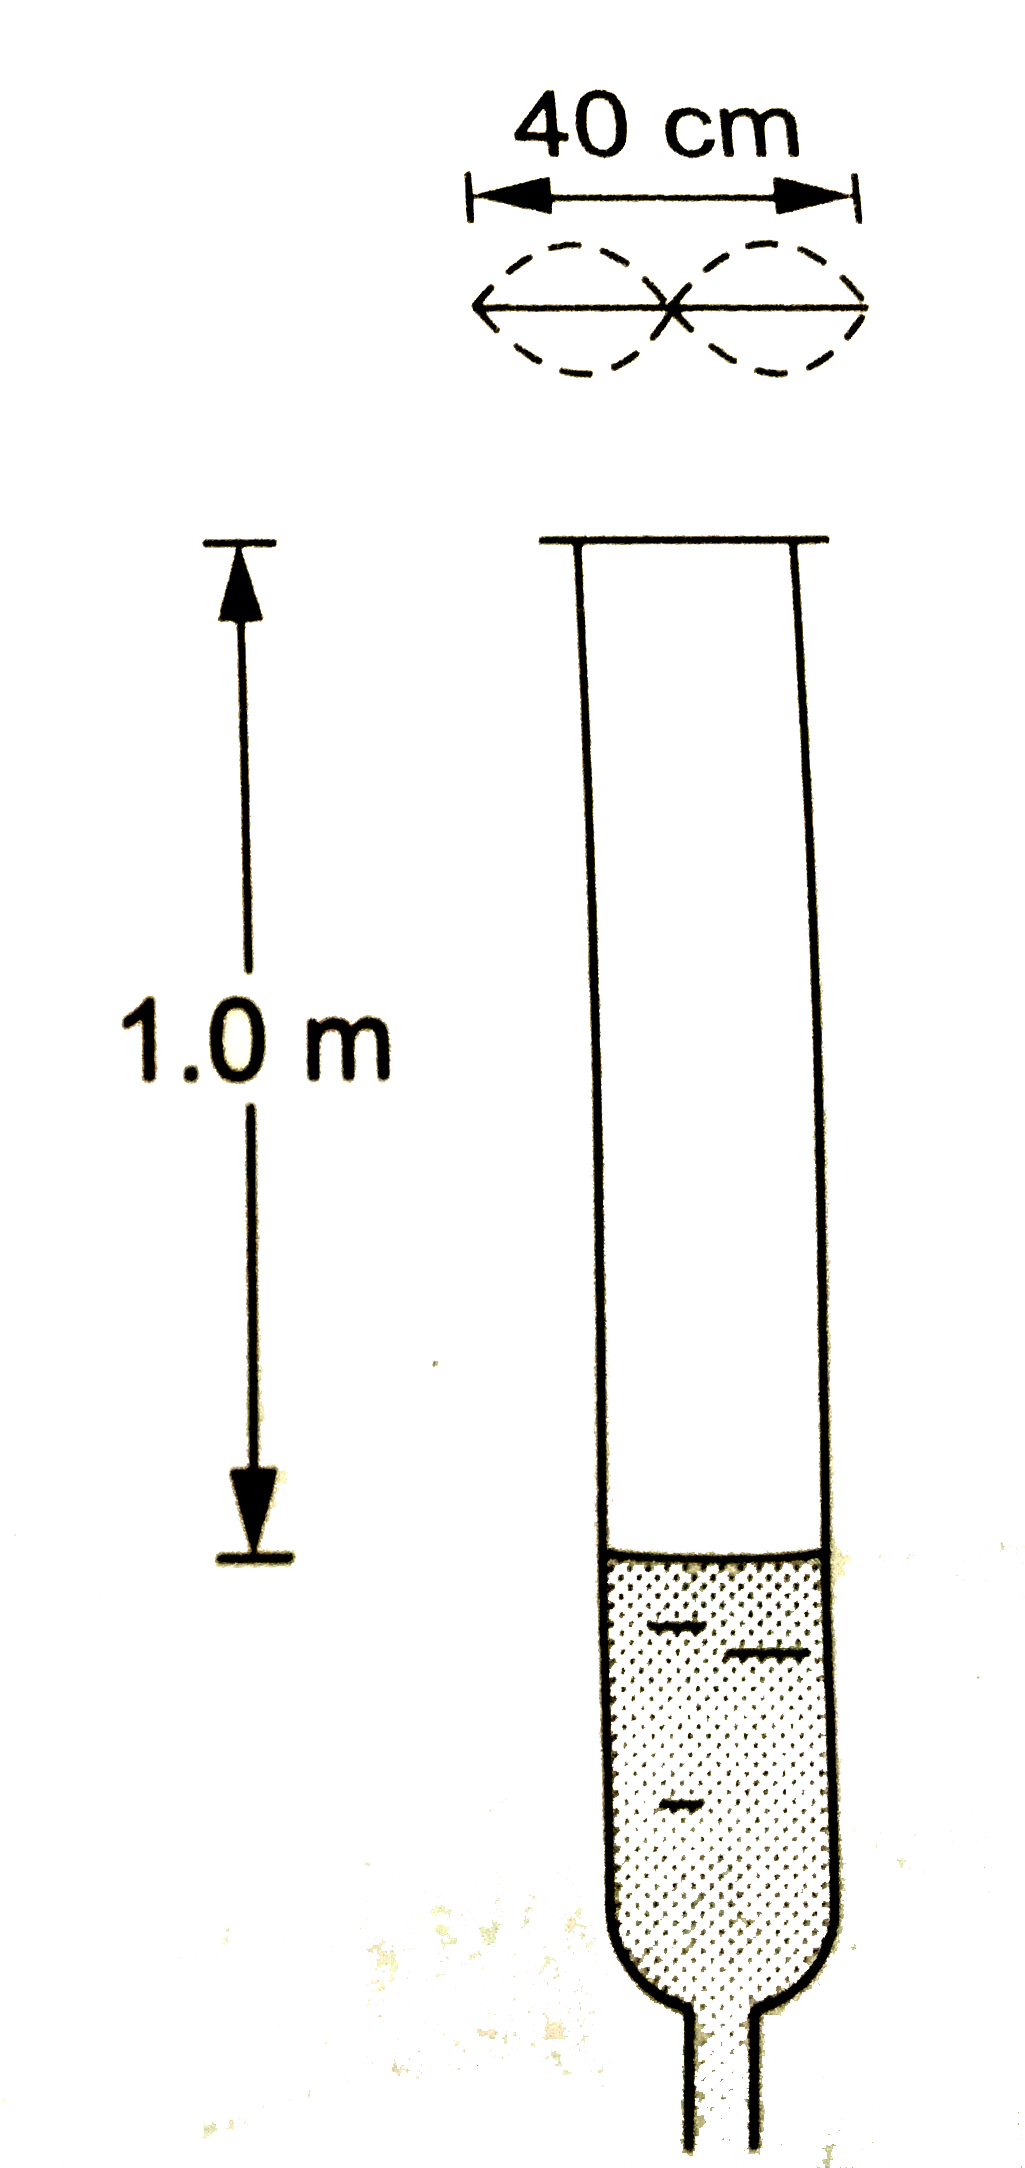 एक अनुनाद  नली के उप्पर  40 cm  लम्बाई  तथा  4.00 g द्रिव्यमान  का एक तार  अपने दोनों    किनारो  पर स्ठर  अवस्था   में रखा  गया  है तार  अपने दूसरे  सनादि  में कंपन    कर अनुनाद  नली   में  स्थित  1.0 m  लम्बे   वयइस्तंब   को अपनी मूल विधा (fundamental mode) में अनुनाद कर देता है हवा   में धवनि की चाल को 340 m/s  मानते हुए  तार  में तनाव  निकाले